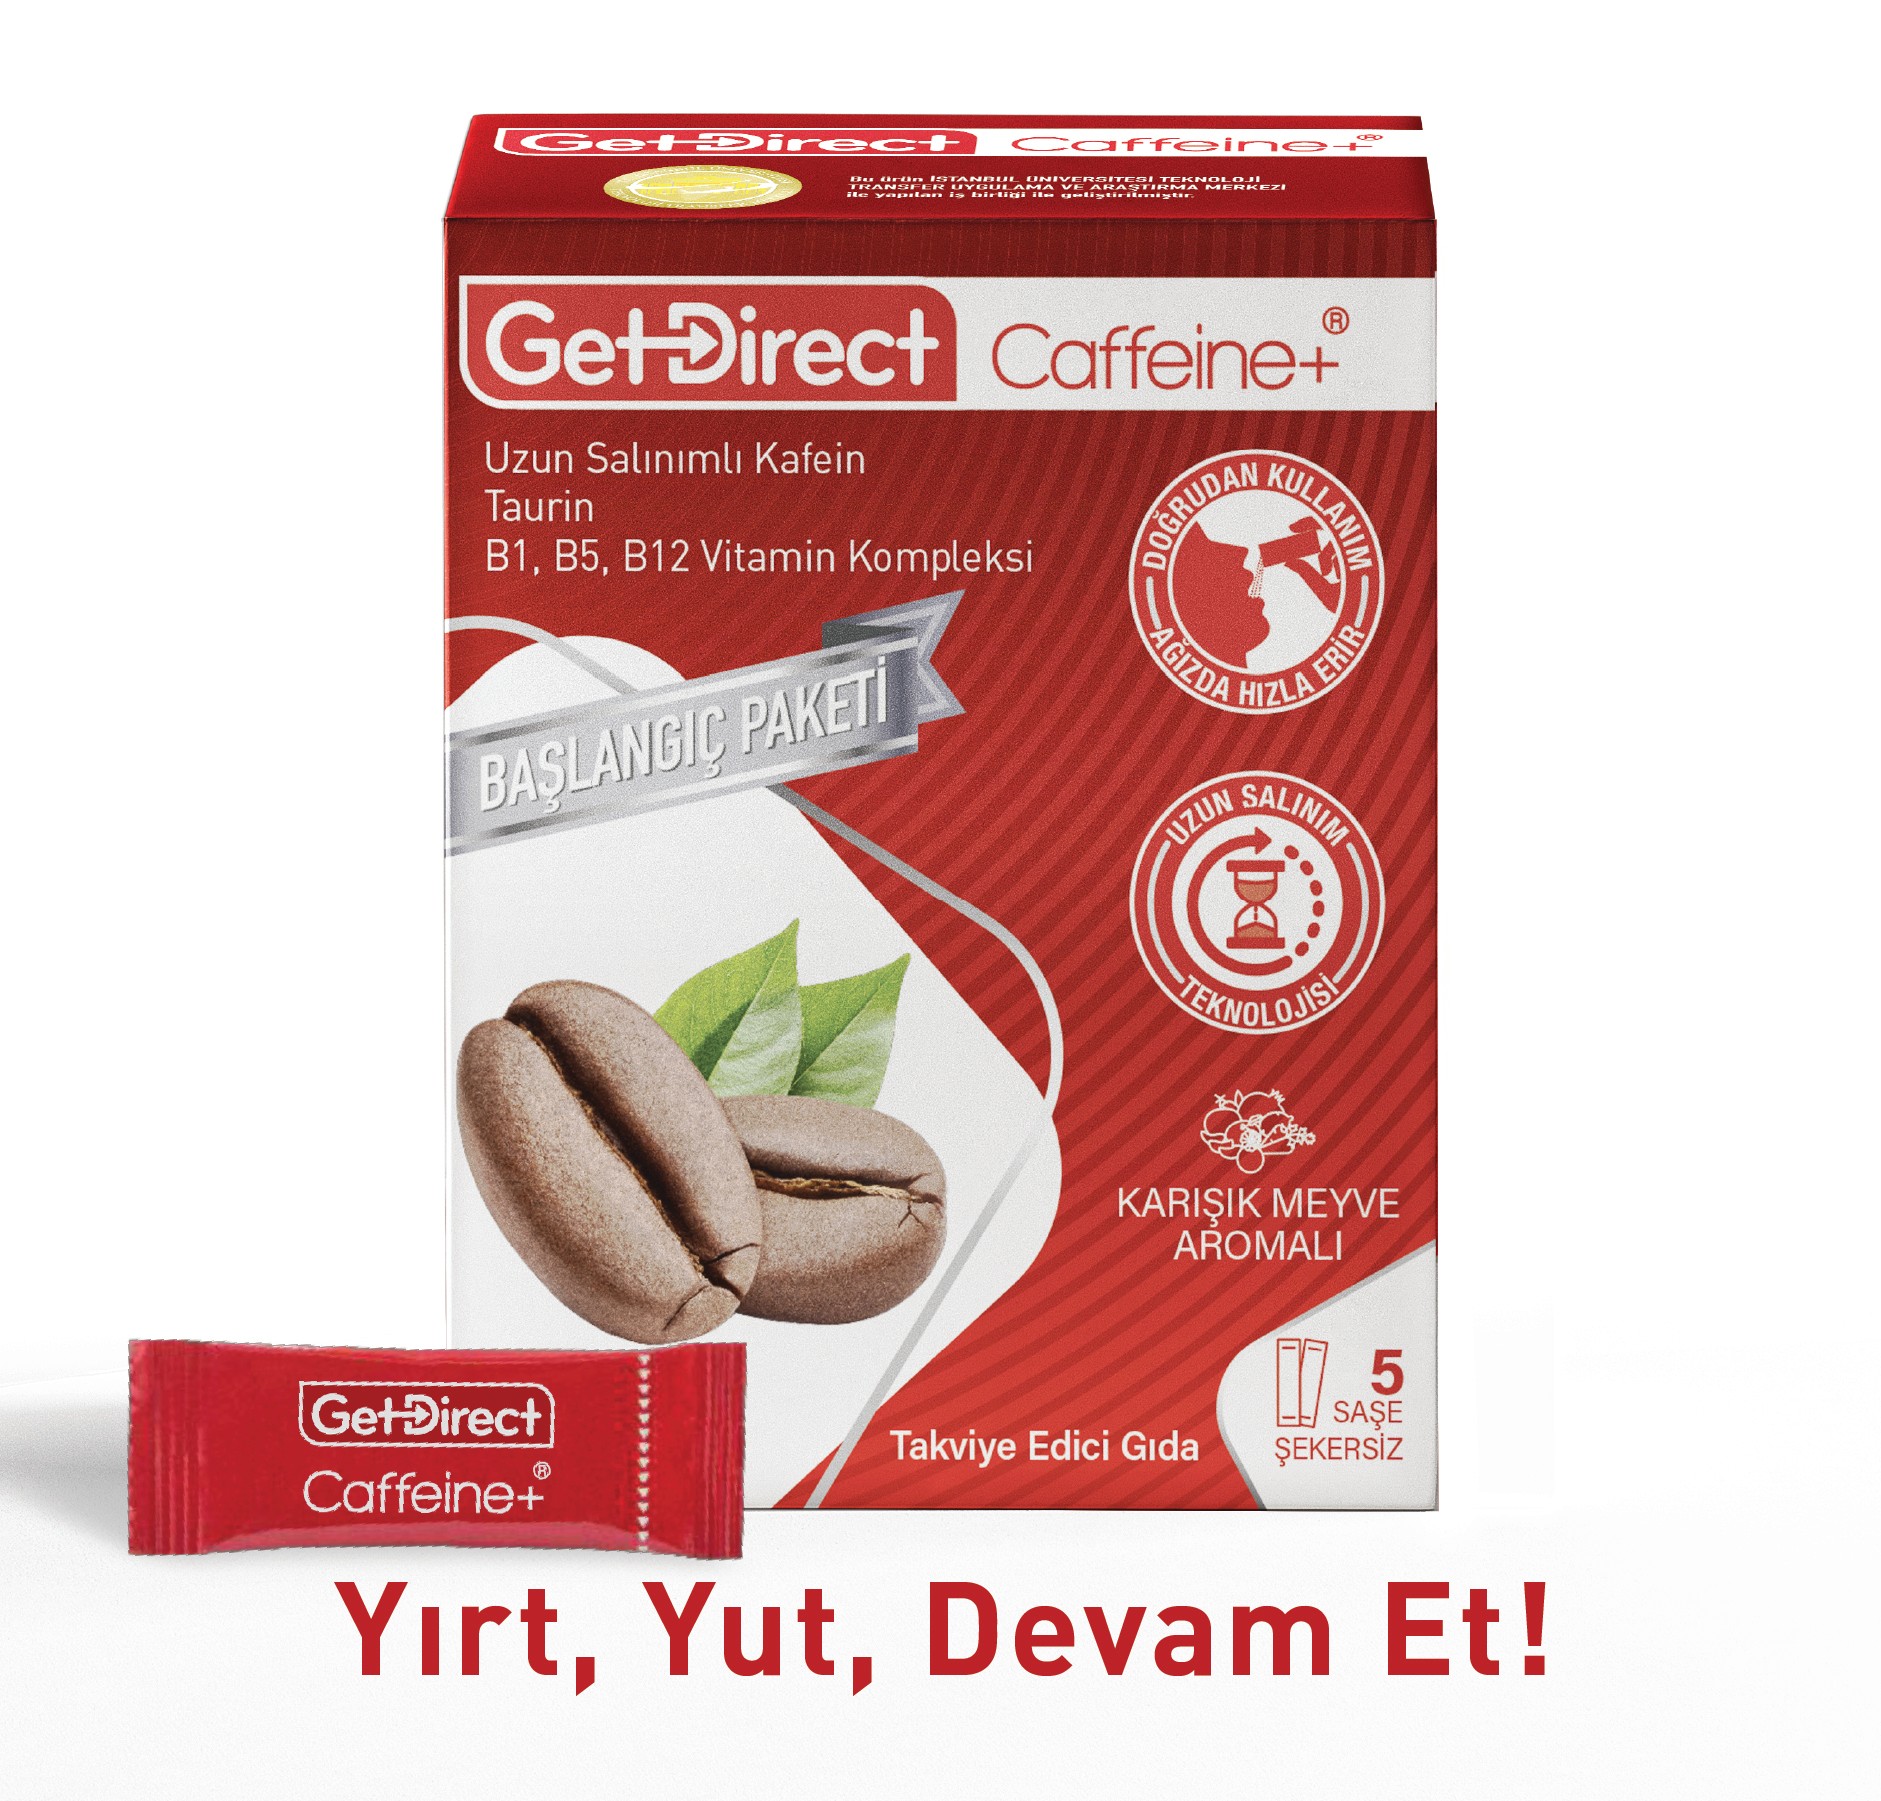 GetDirect Caffeine+ Başlangıç Paketi Uzun Salınımlı Kafein, Taurin ve Vitamin B Kompleksi  İçeren Takviye Edici Gıda